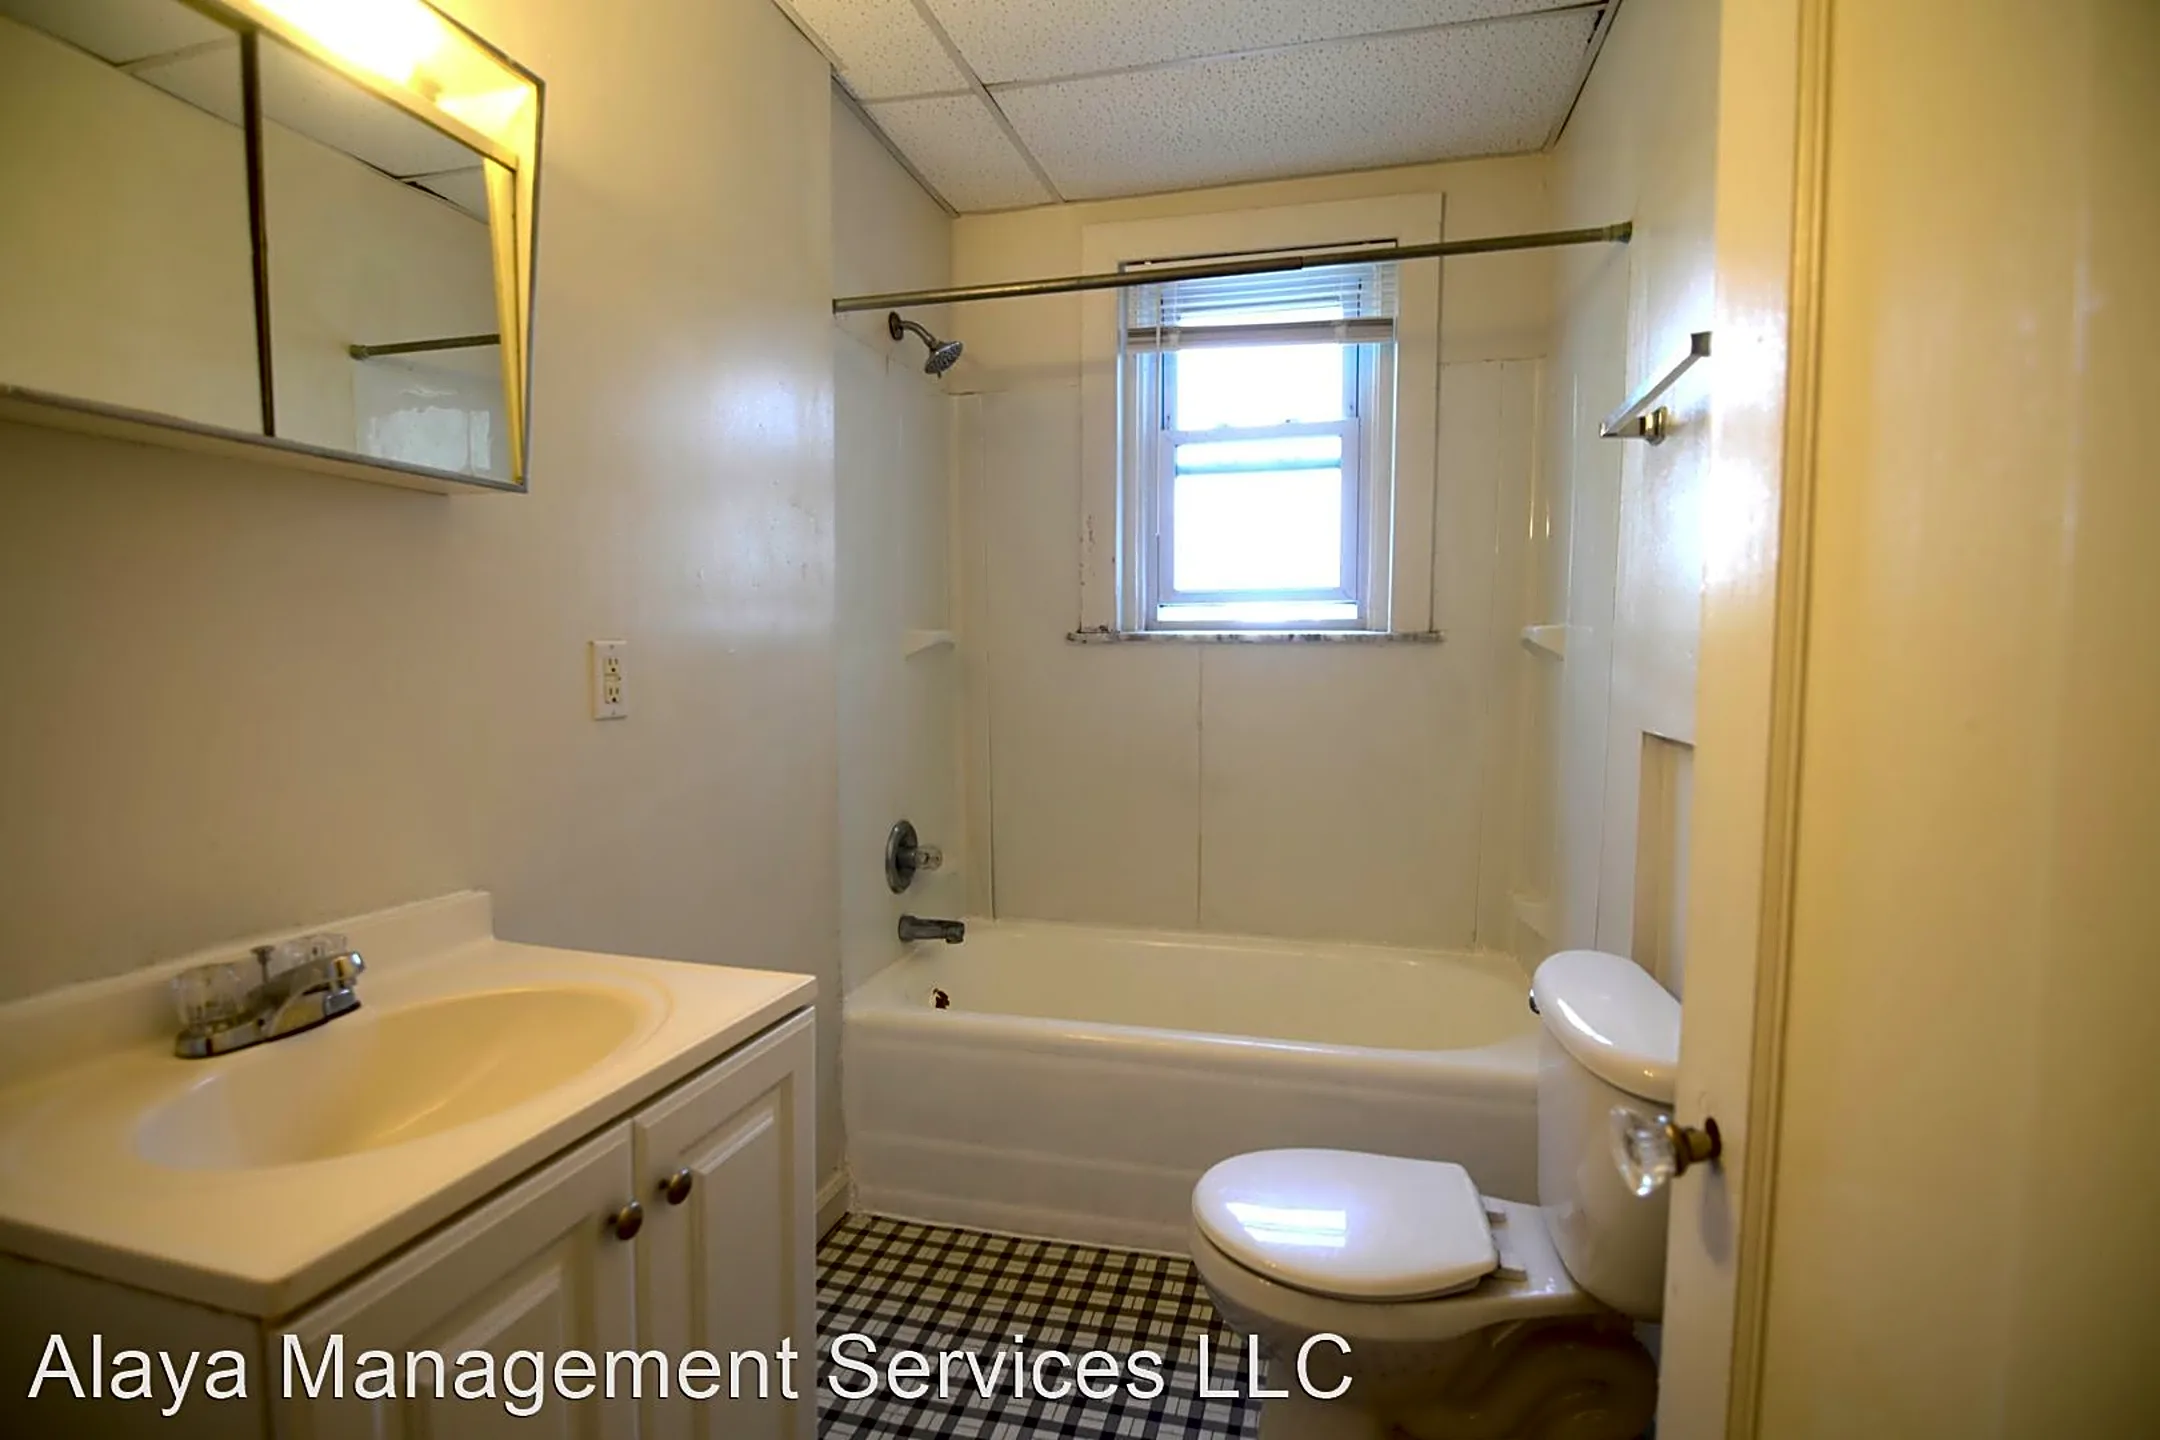 Bathroom - 521-523 Oak St - Elmwood Place, OH